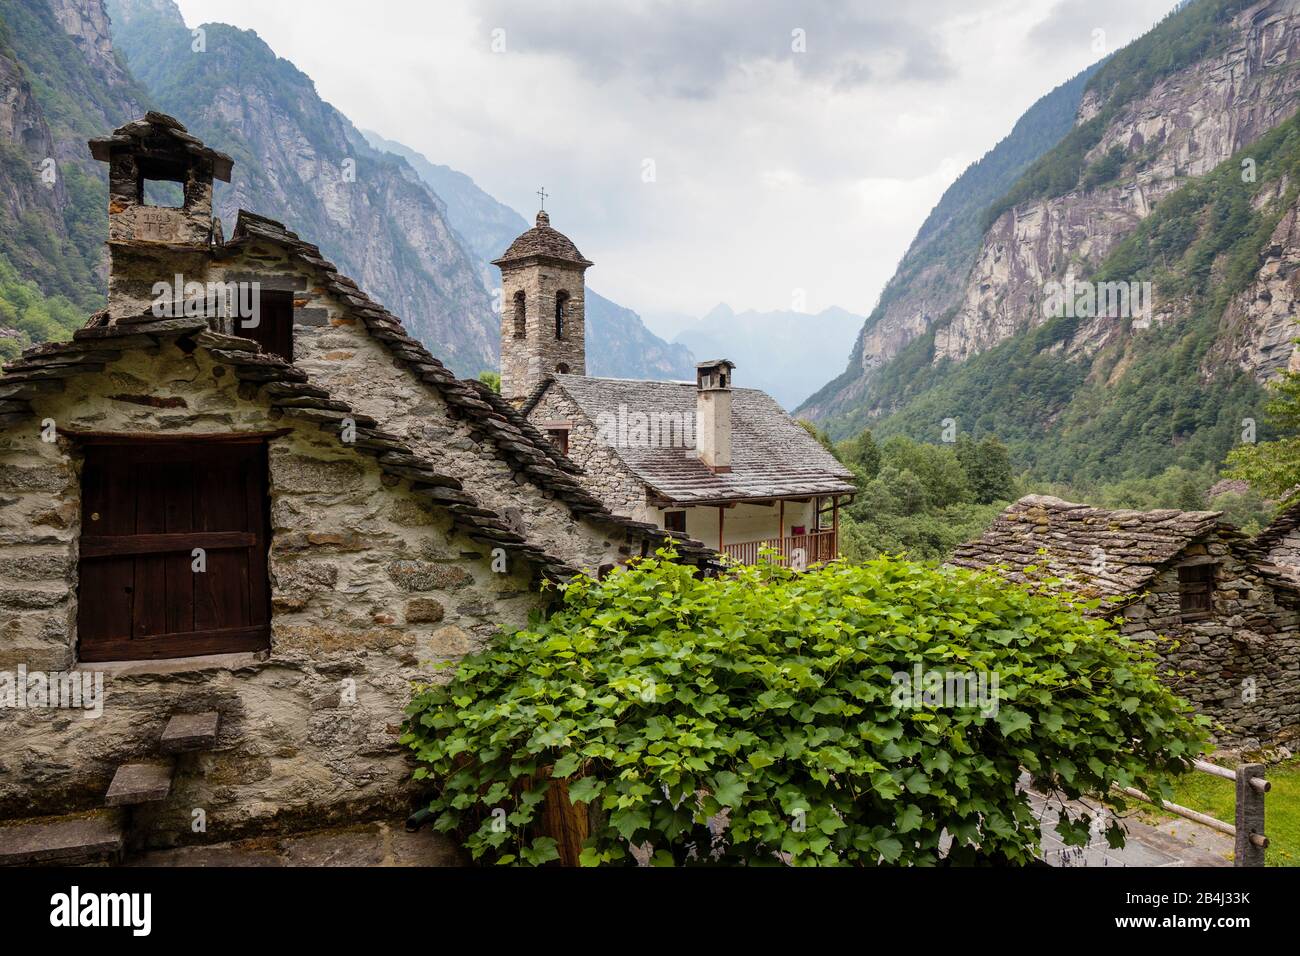 Europa, Schweiz, Tessin, Foroglio. Blick über das malerische, alte Dorf Foroglio in das Bavonatal. Stock Photo